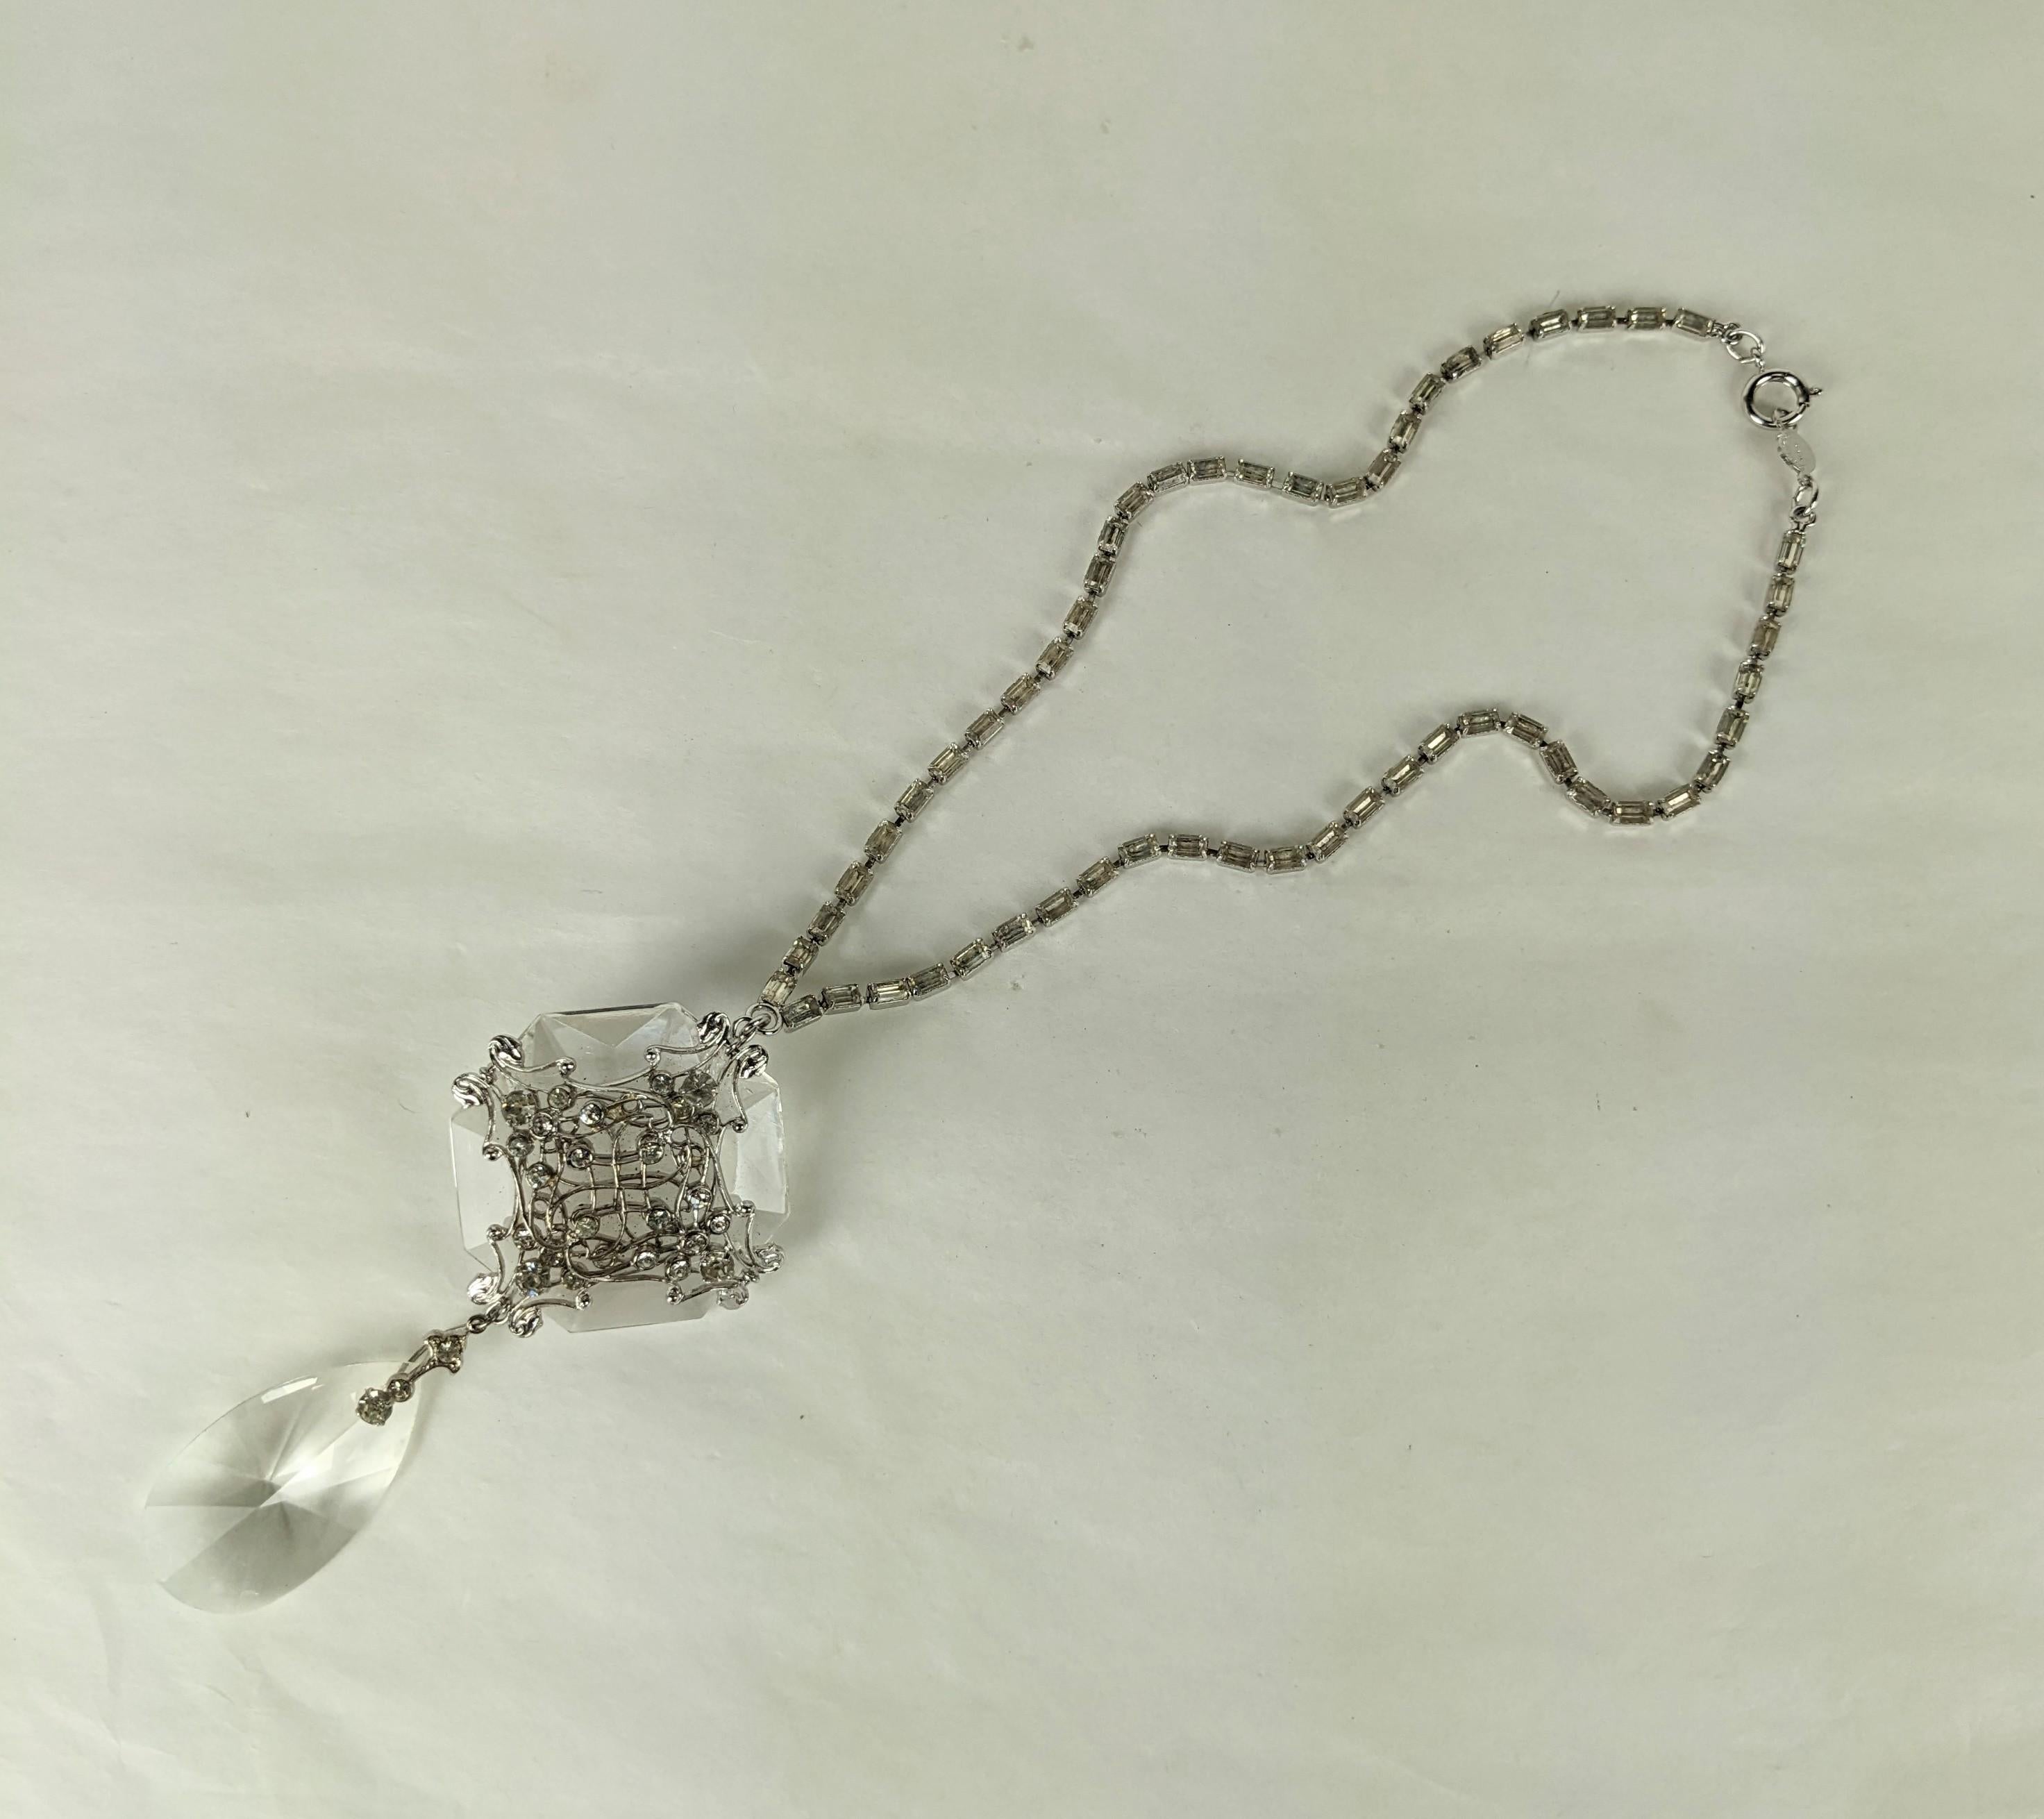 Ungewöhnlicher Kristall-Kronleuchter von Accessocraft aus den 1950er Jahren. Lucite-Kristalle sind auf einem versilberten, mit Kristallsteinen besetzten Filigran montiert. Halskette aus flexiblen Baguette-Kristallen. 1950er Jahre USA. Halskette 16